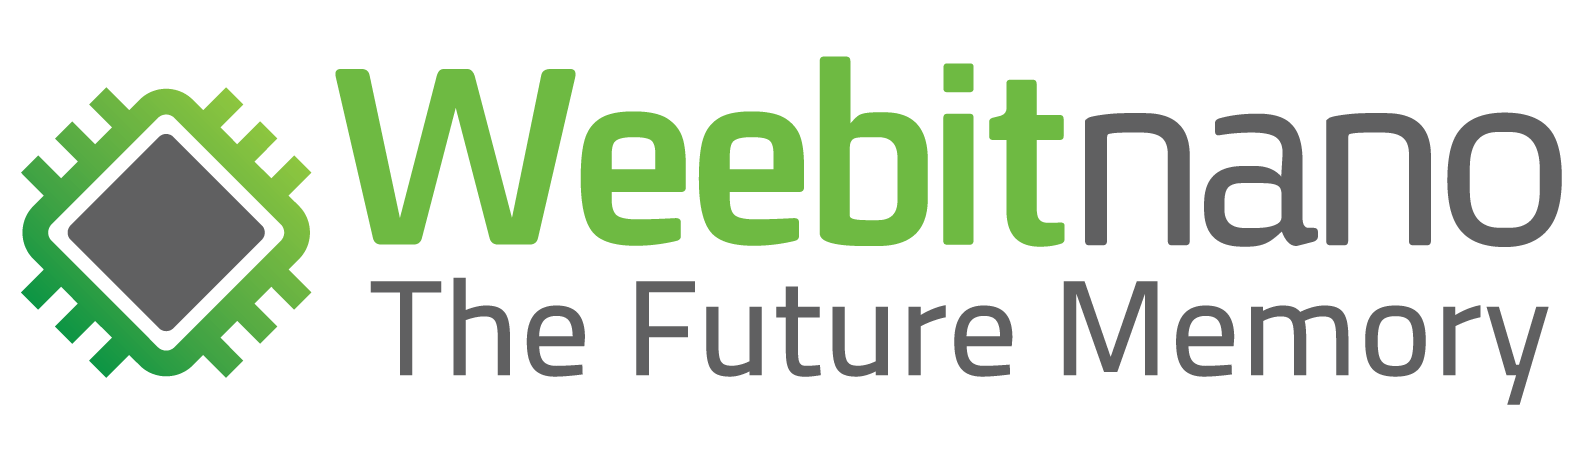 Weebit Nano Ltd Logo